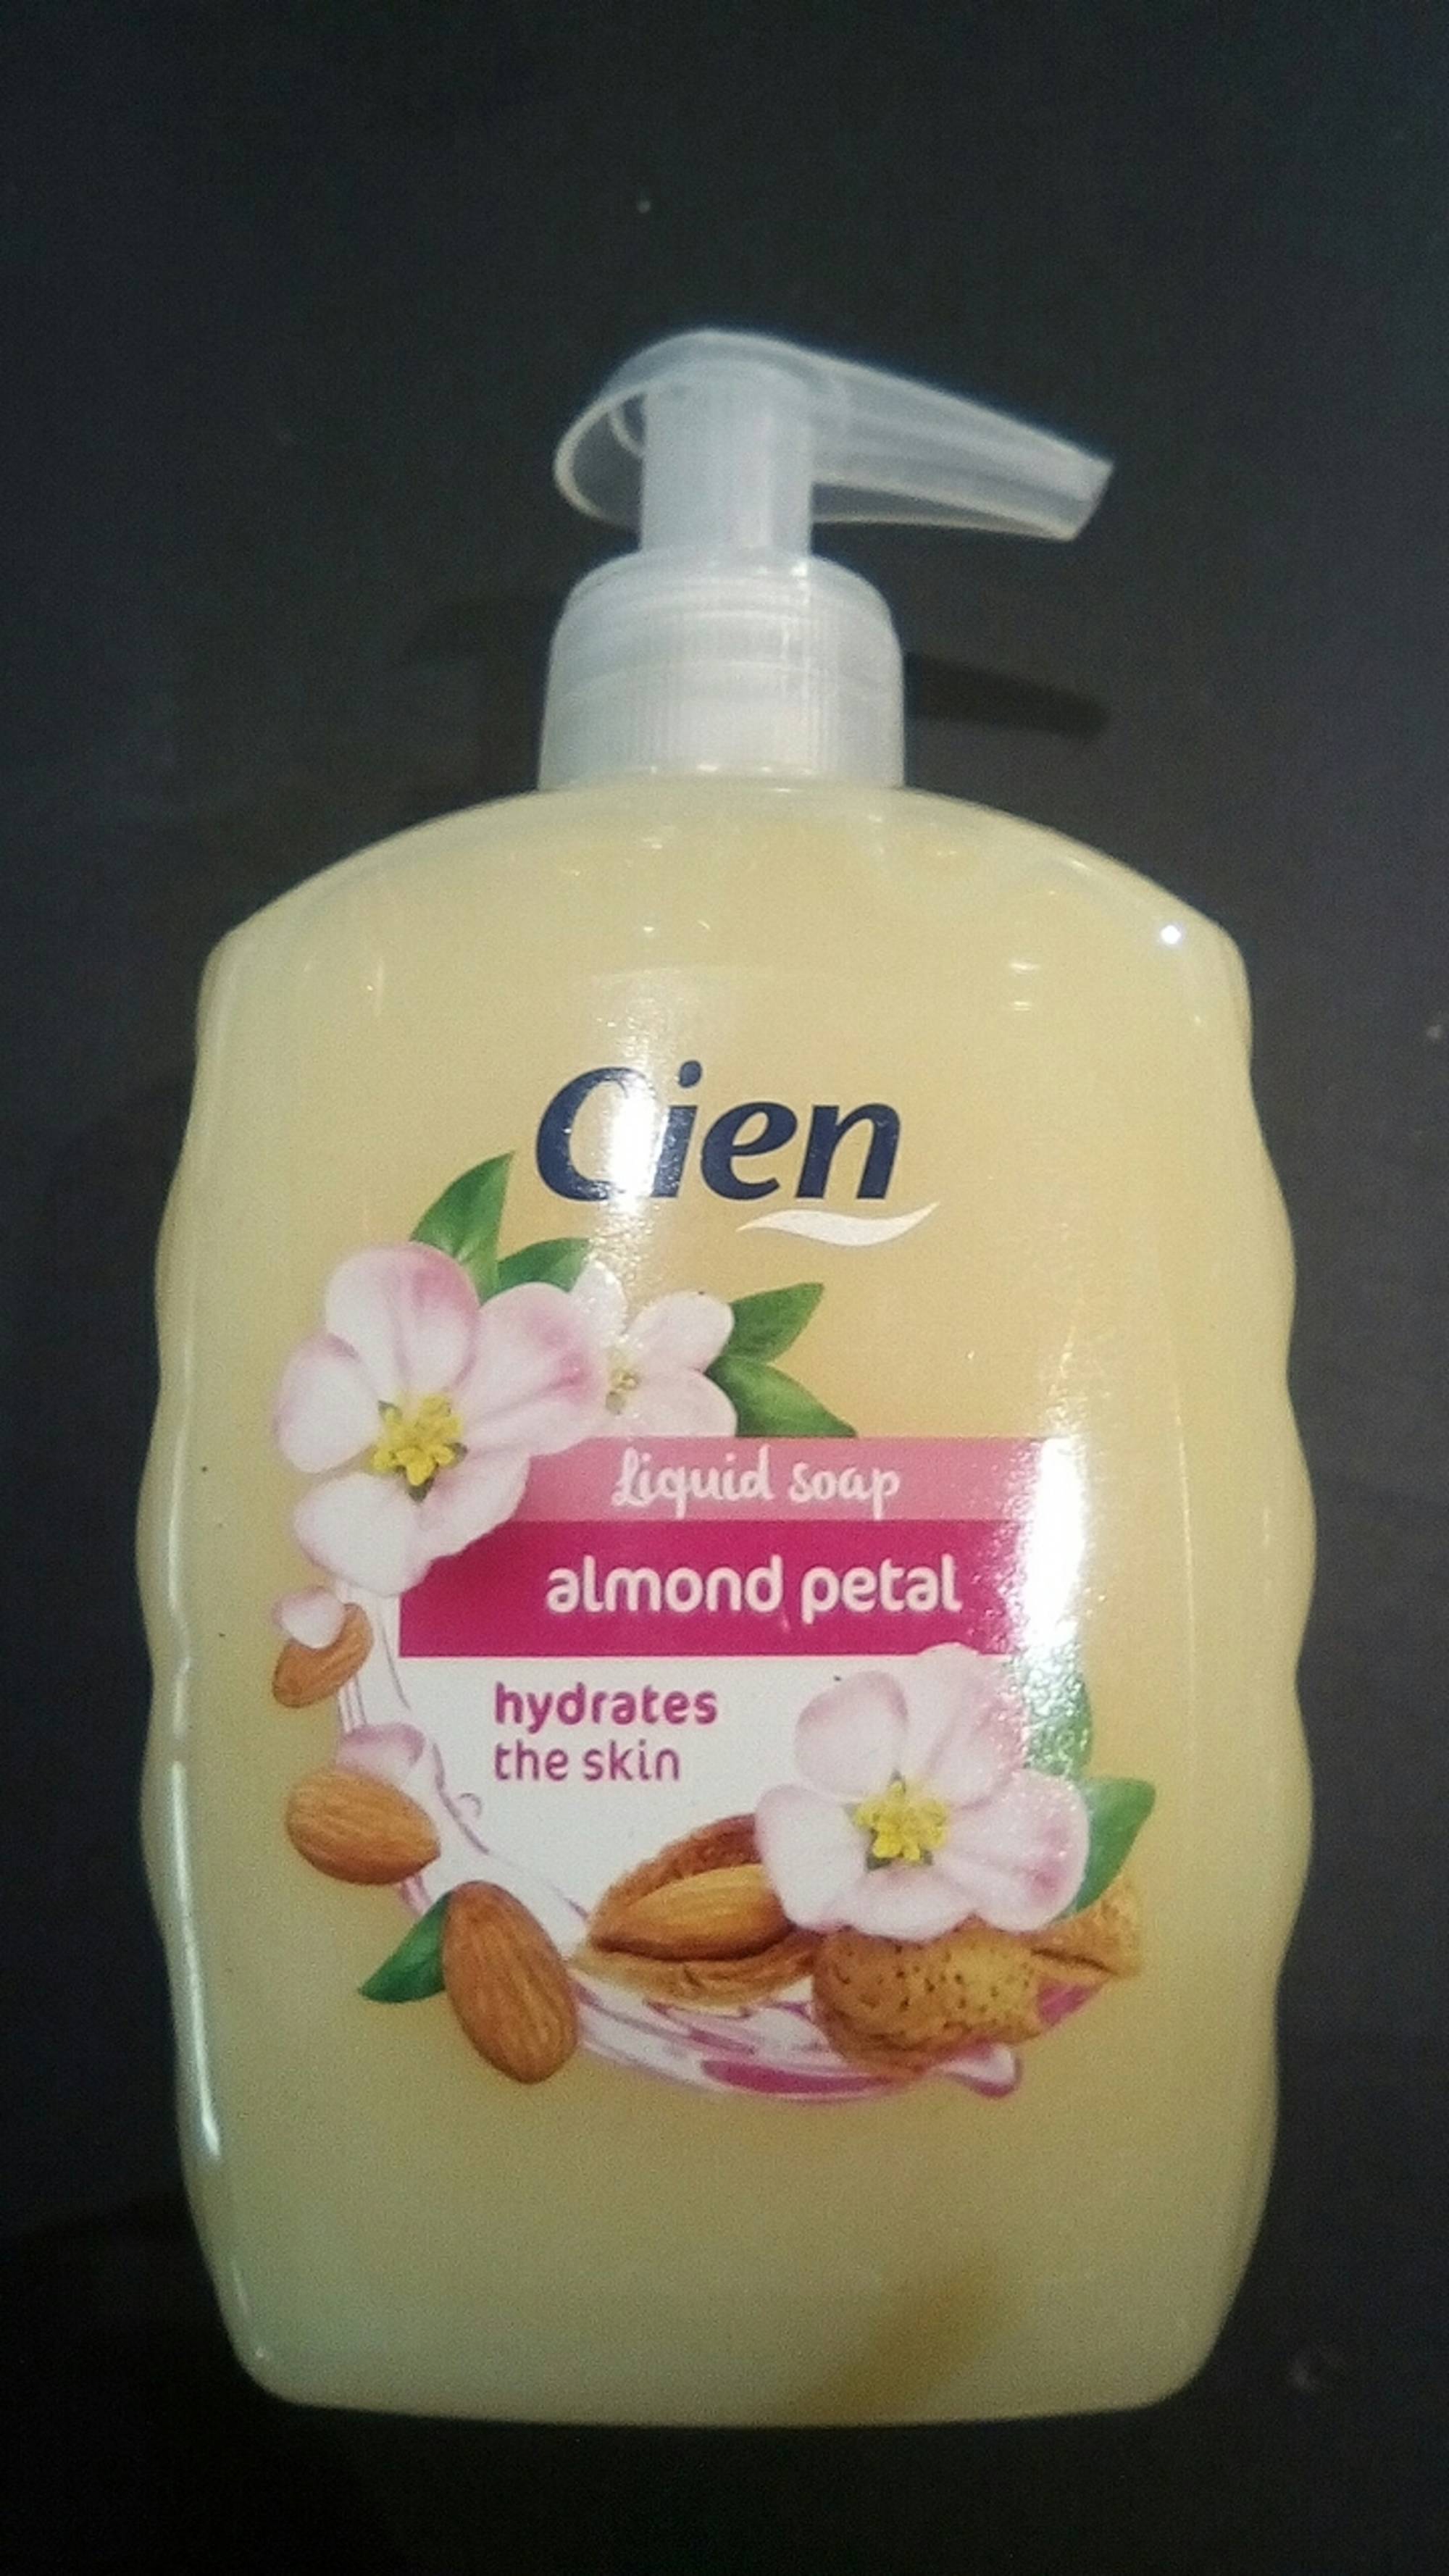 LIDL - Cien - Liquid soap